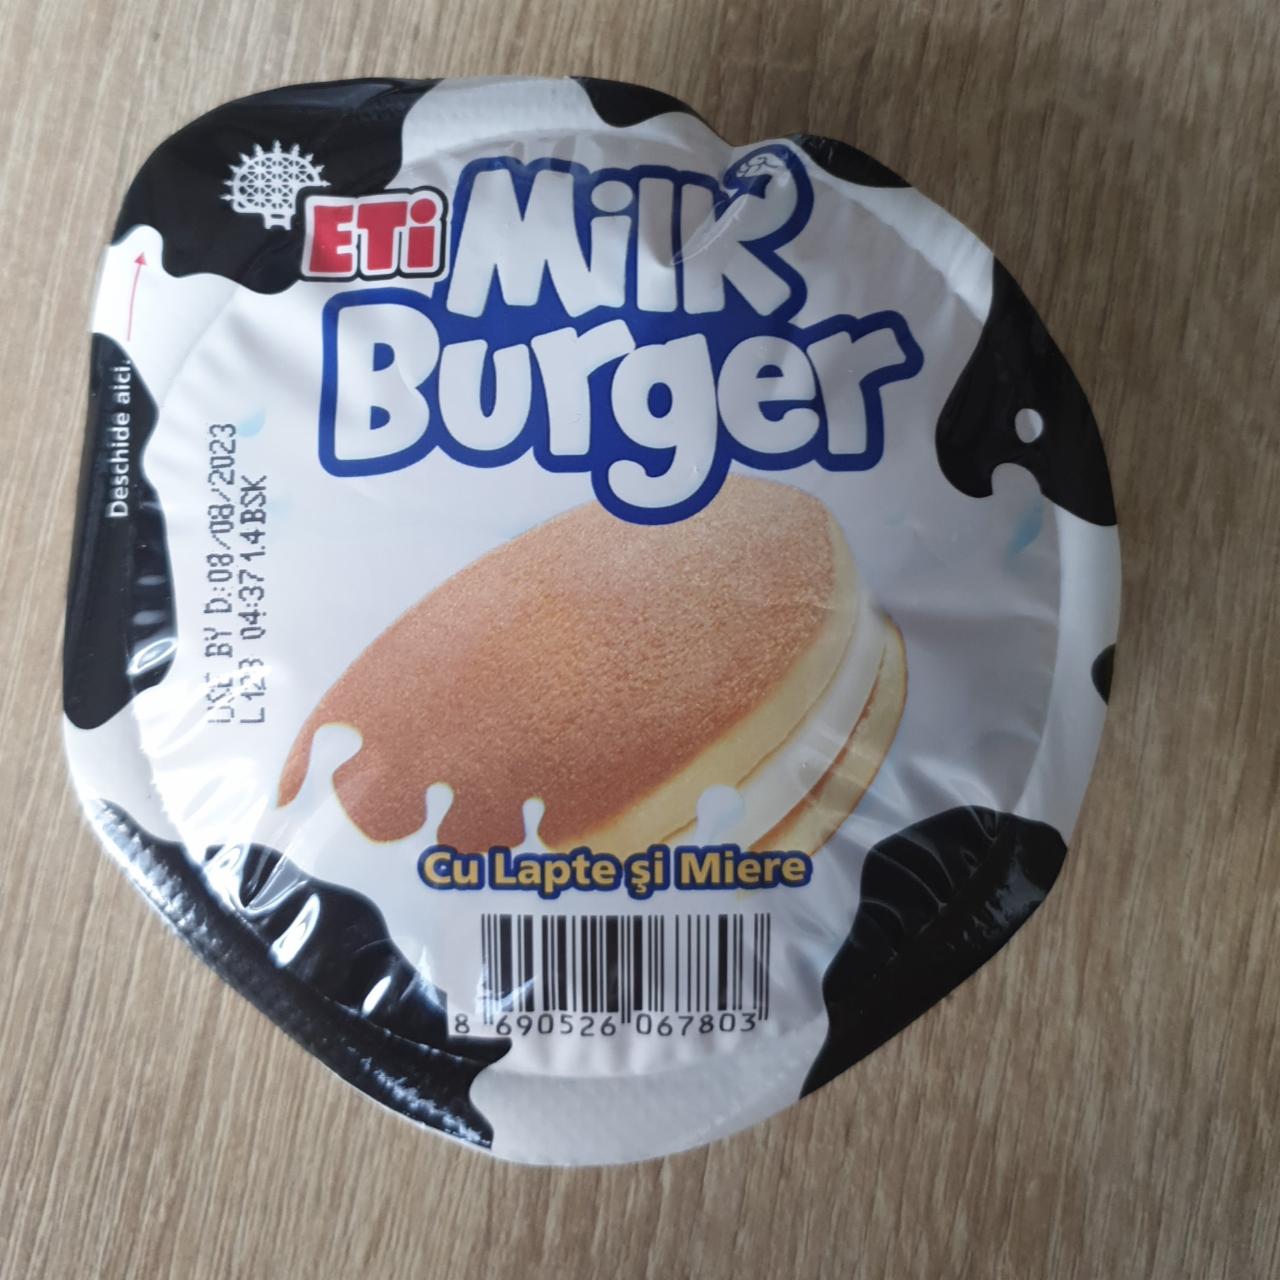 Фото - Печенье с молоком и медом Milk Burger Eti